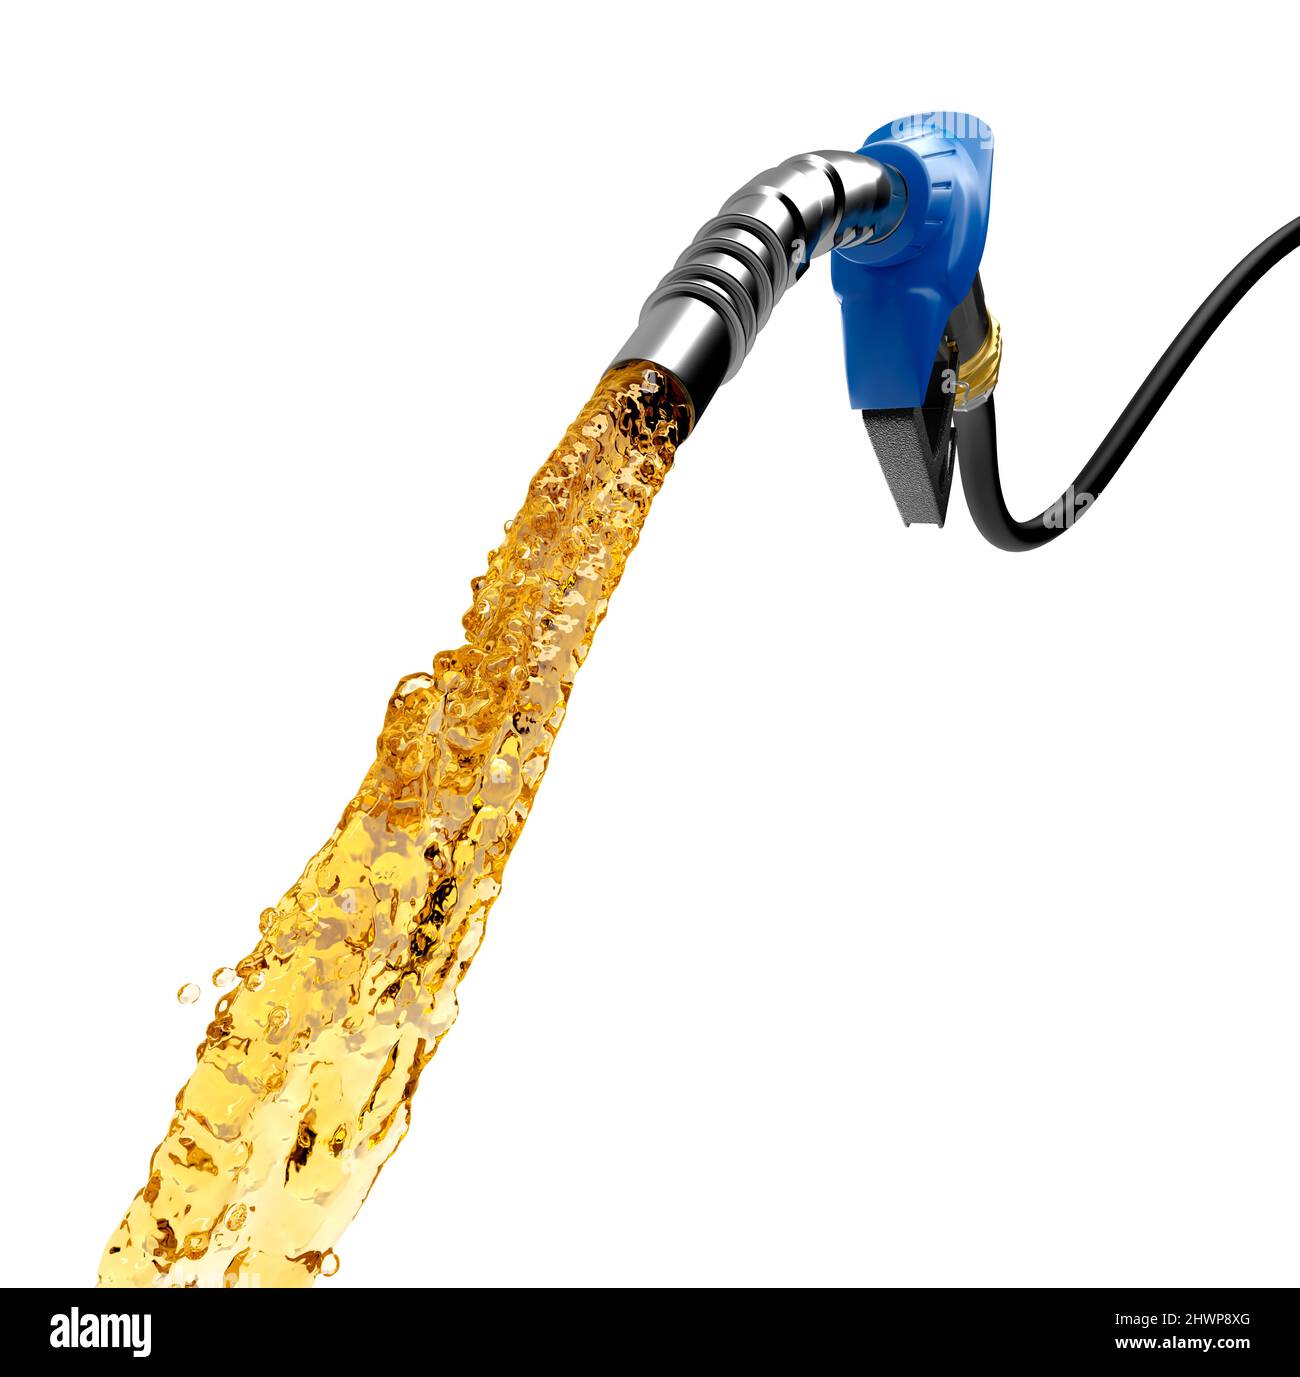 L'essence sort de la pompe à essence de couleur bleue - rendu 3D Photo  Stock - Alamy